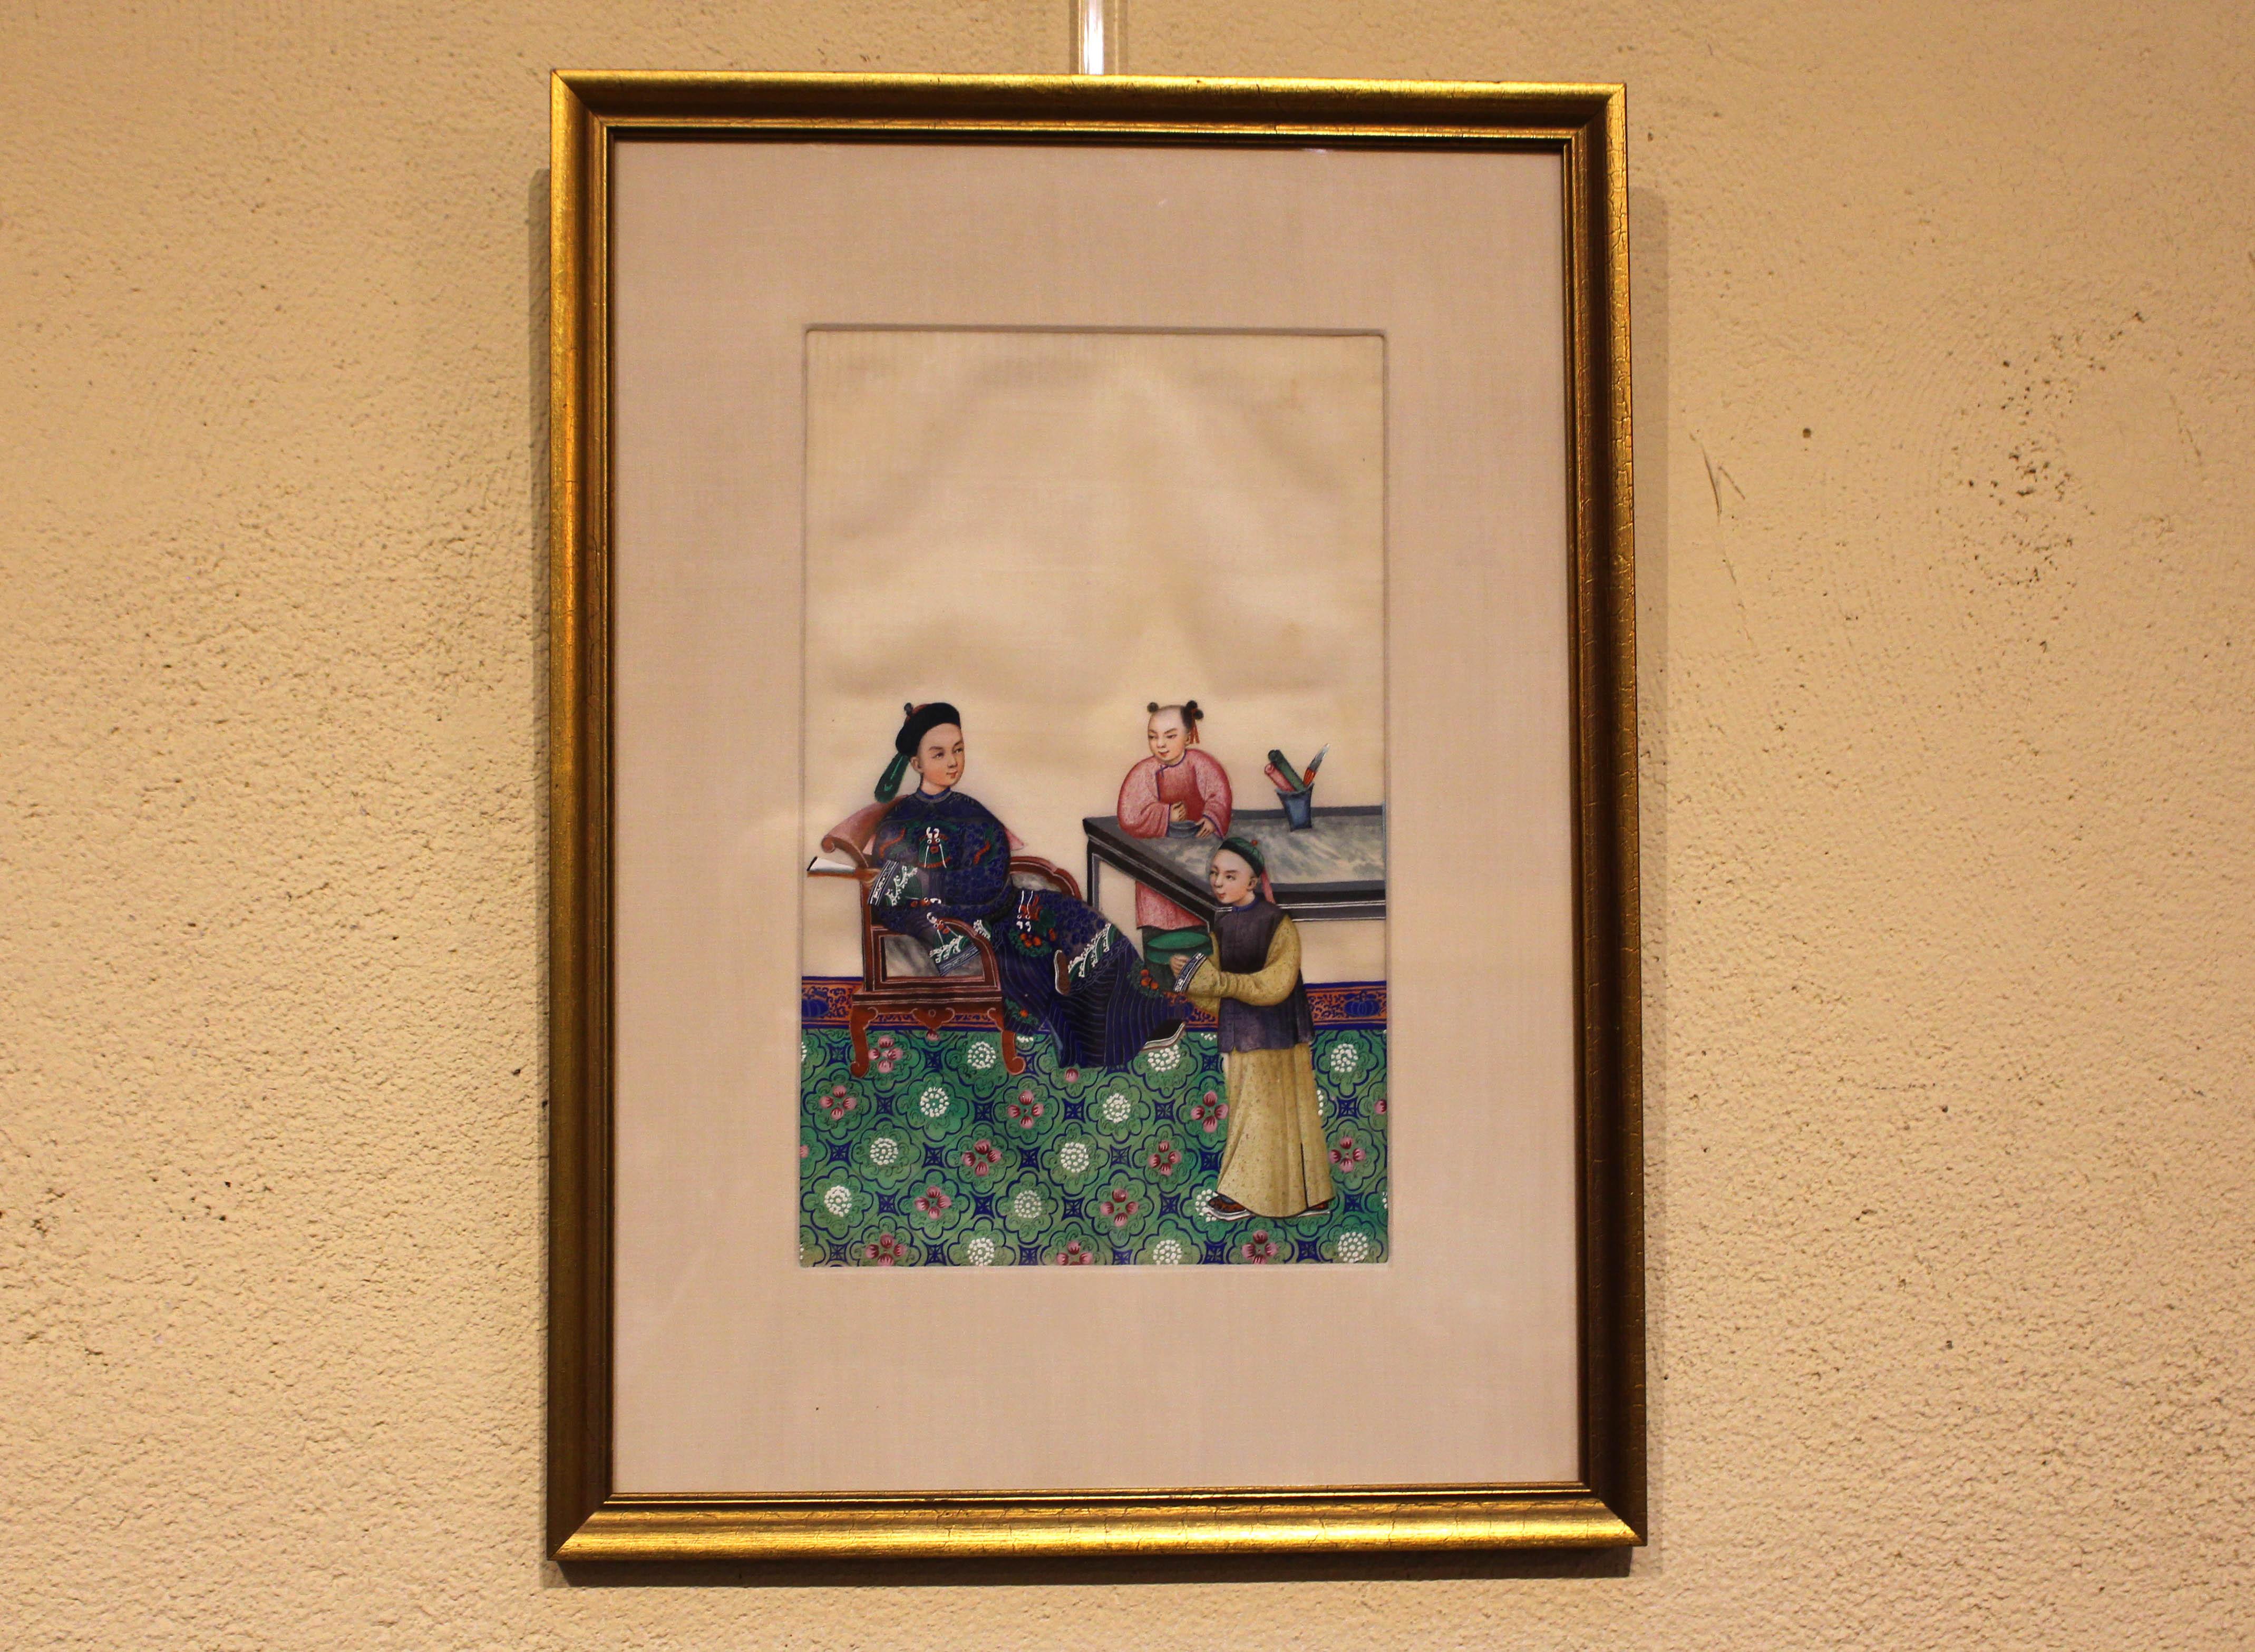 Peinture chinoise du milieu du XIXe siècle sur papier de riz ou de moelle. Gouache ou aquarelle opaque d'un étudiant et de ses accompagnateurs. Remarquez les détails remarquables, notamment la chaise et la table recouvertes de marbre. Bon état avec